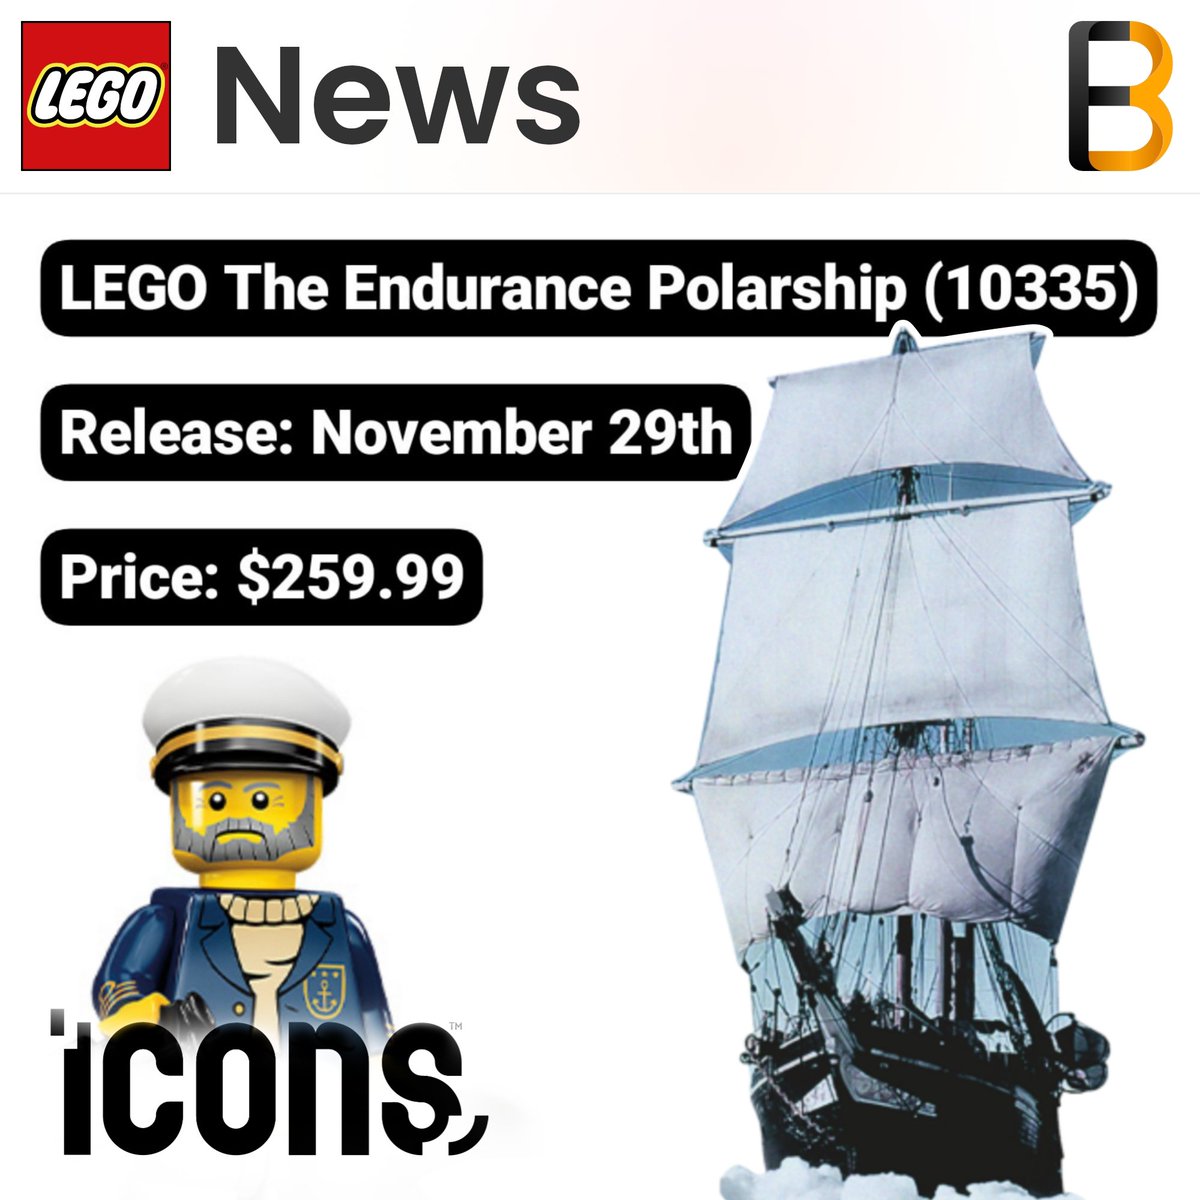 New LEGO Icons Ship rumored for Black Friday! #legonews #legoleaks #lego #ship #Antarctica